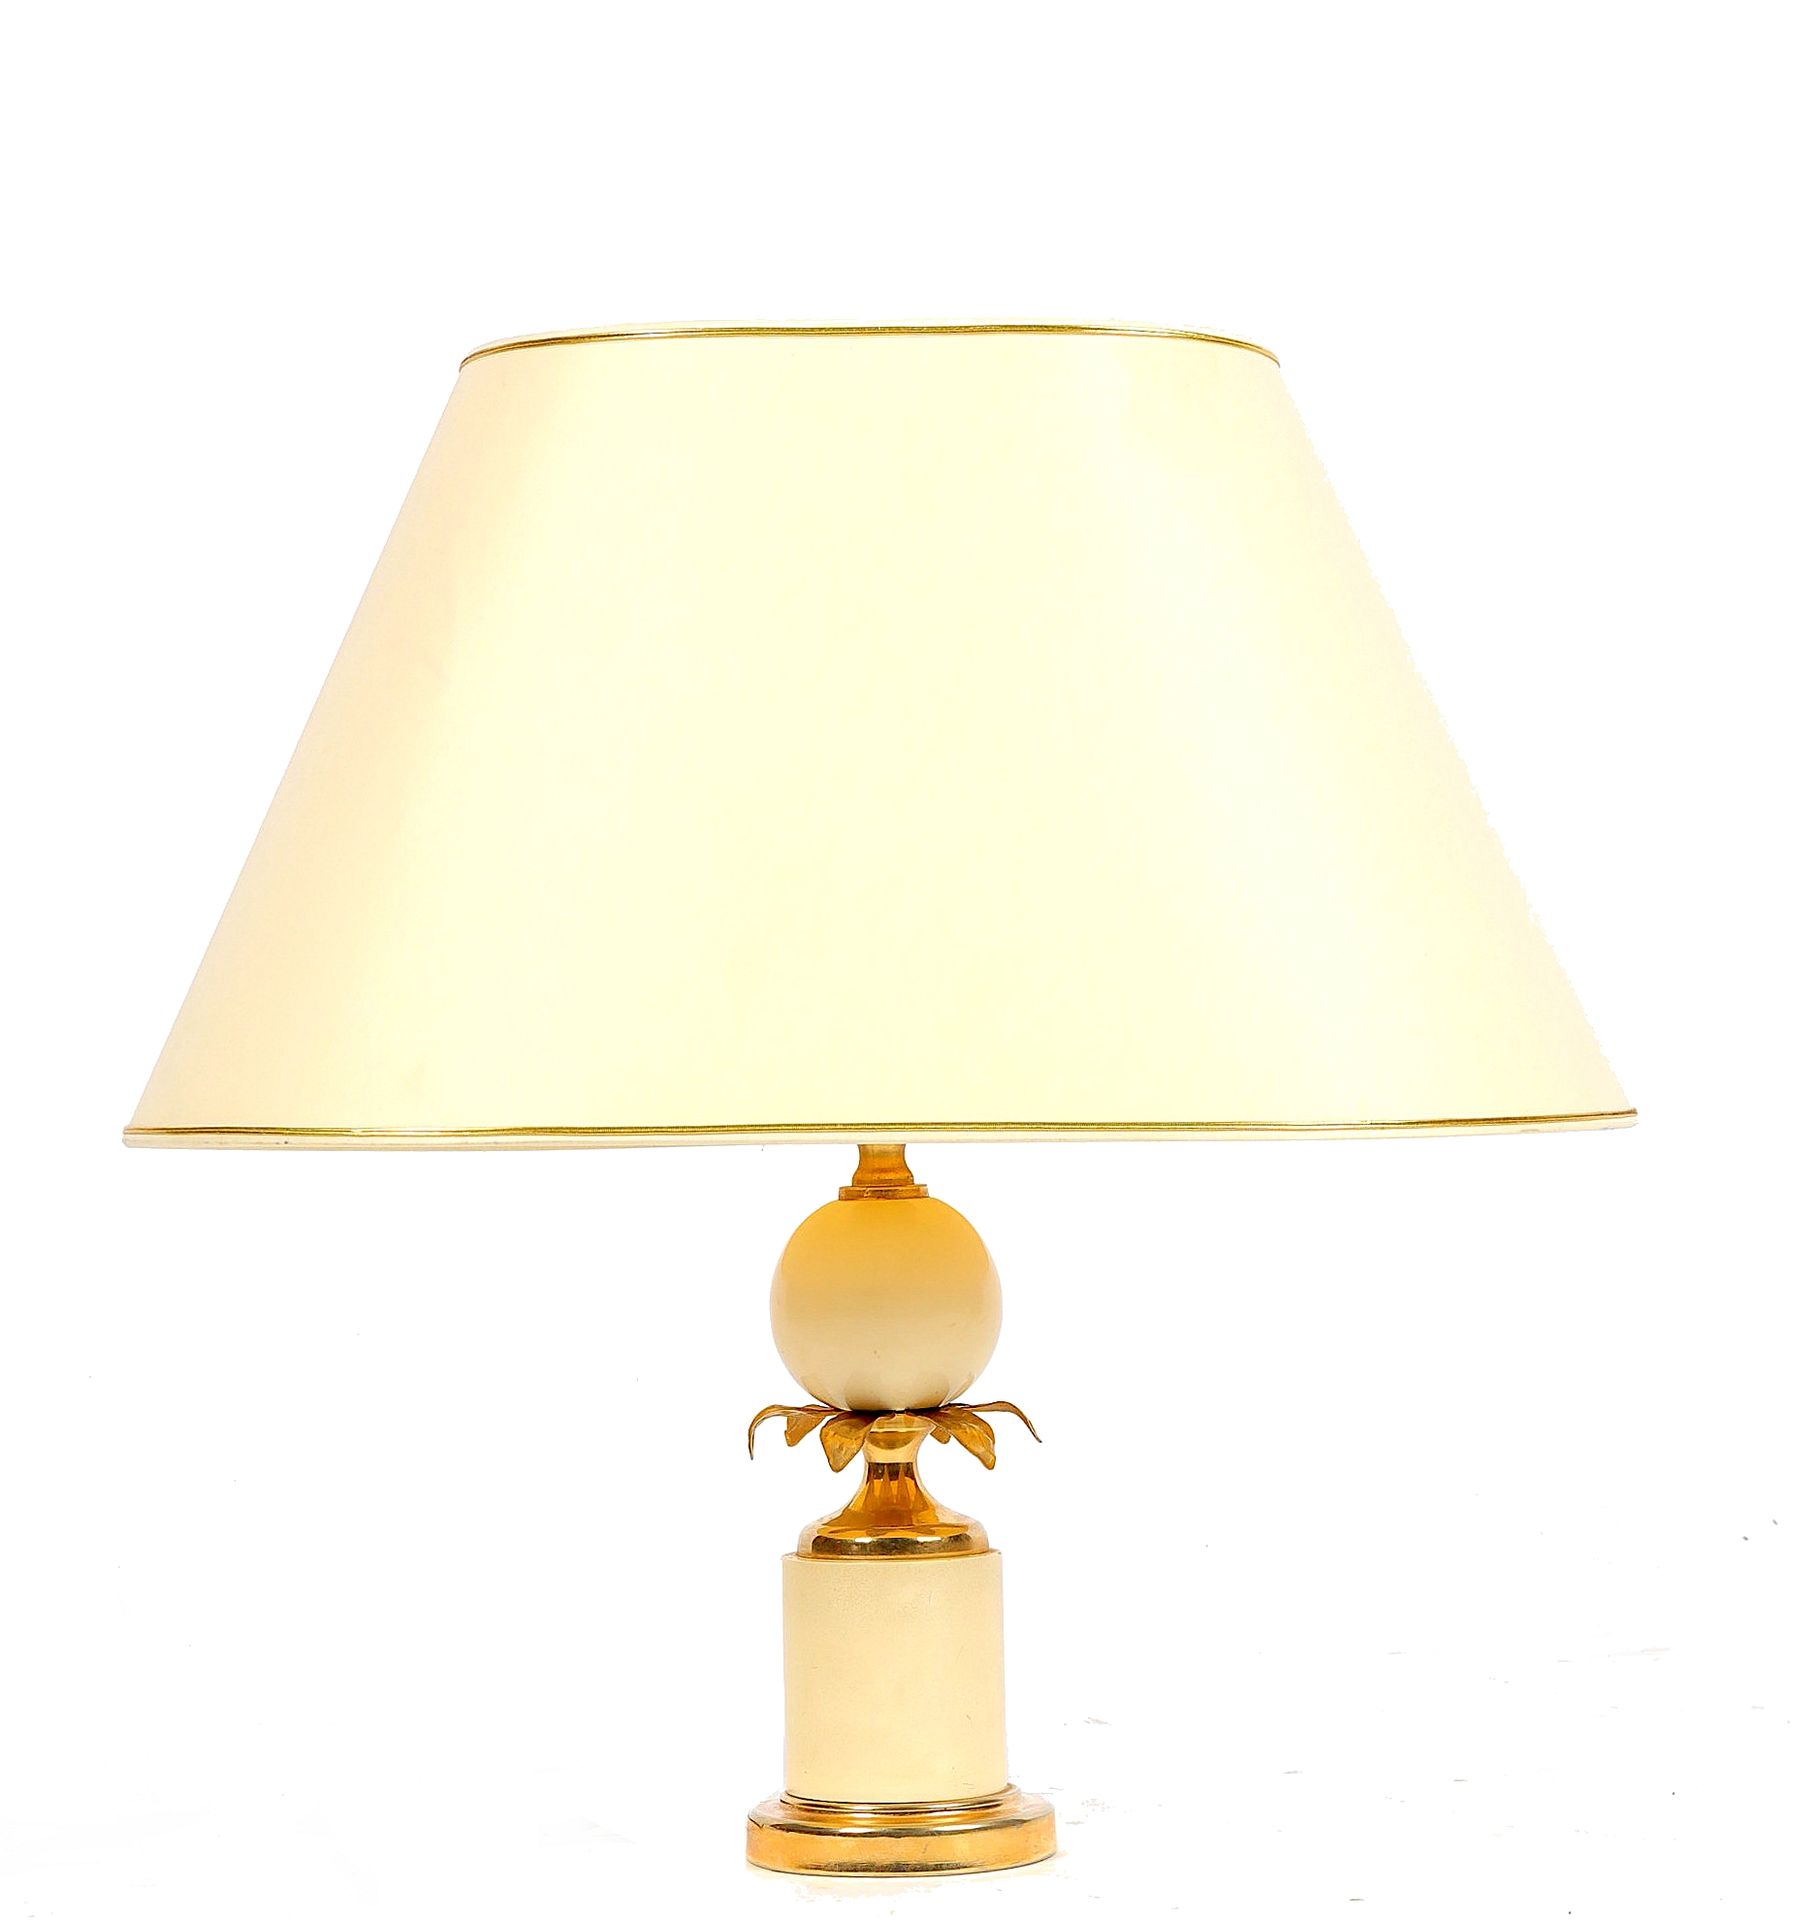 Null Ananaslampe aus Holz mit cremefarbener Patina und Messing, breiter Lampensc&hellip;